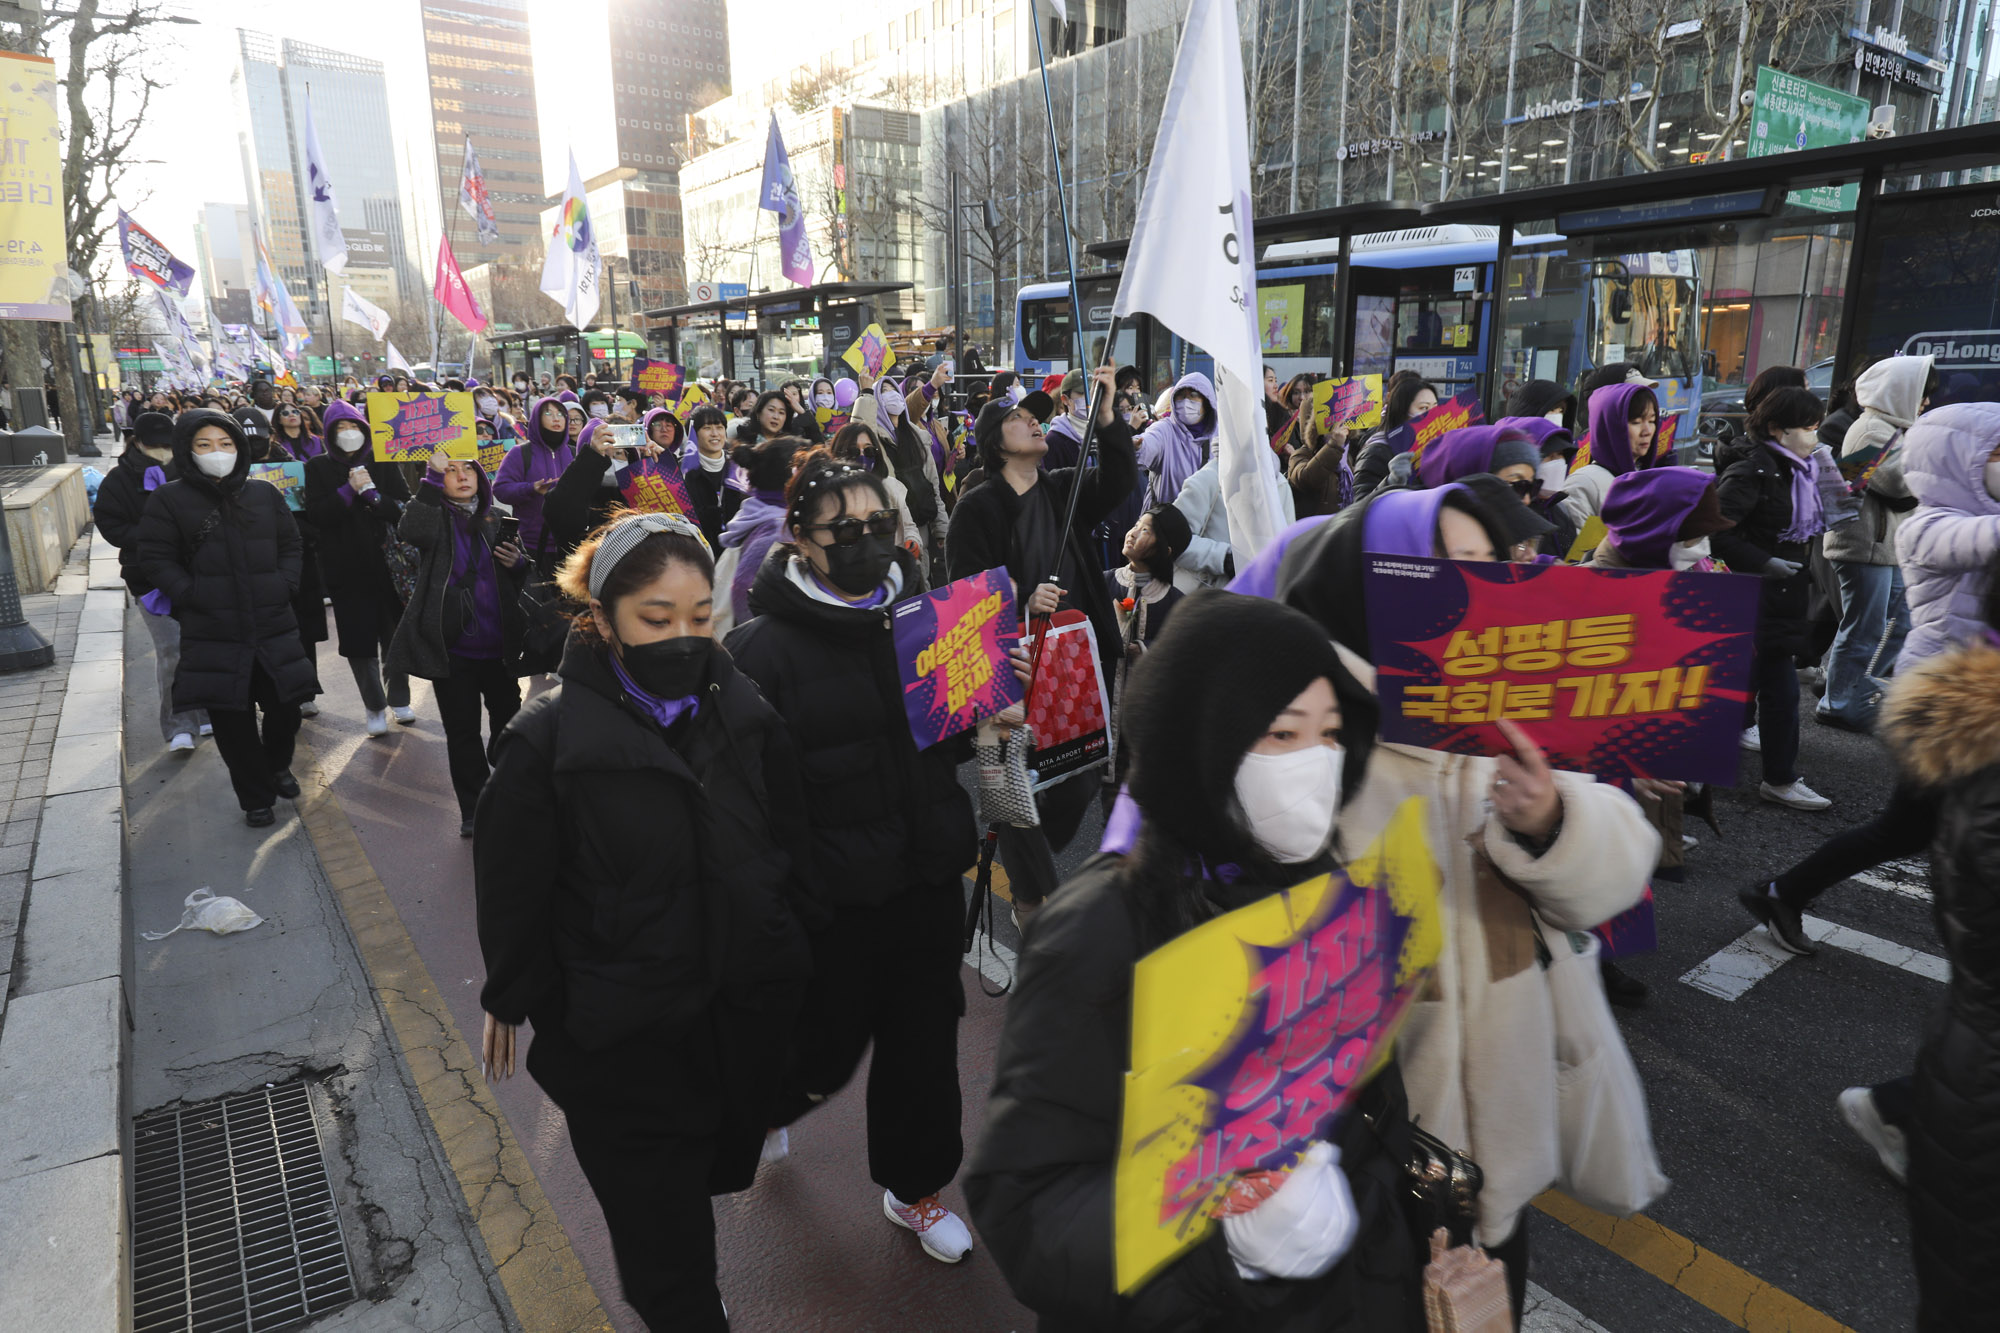 세계여성의날;한국여성대회;패미